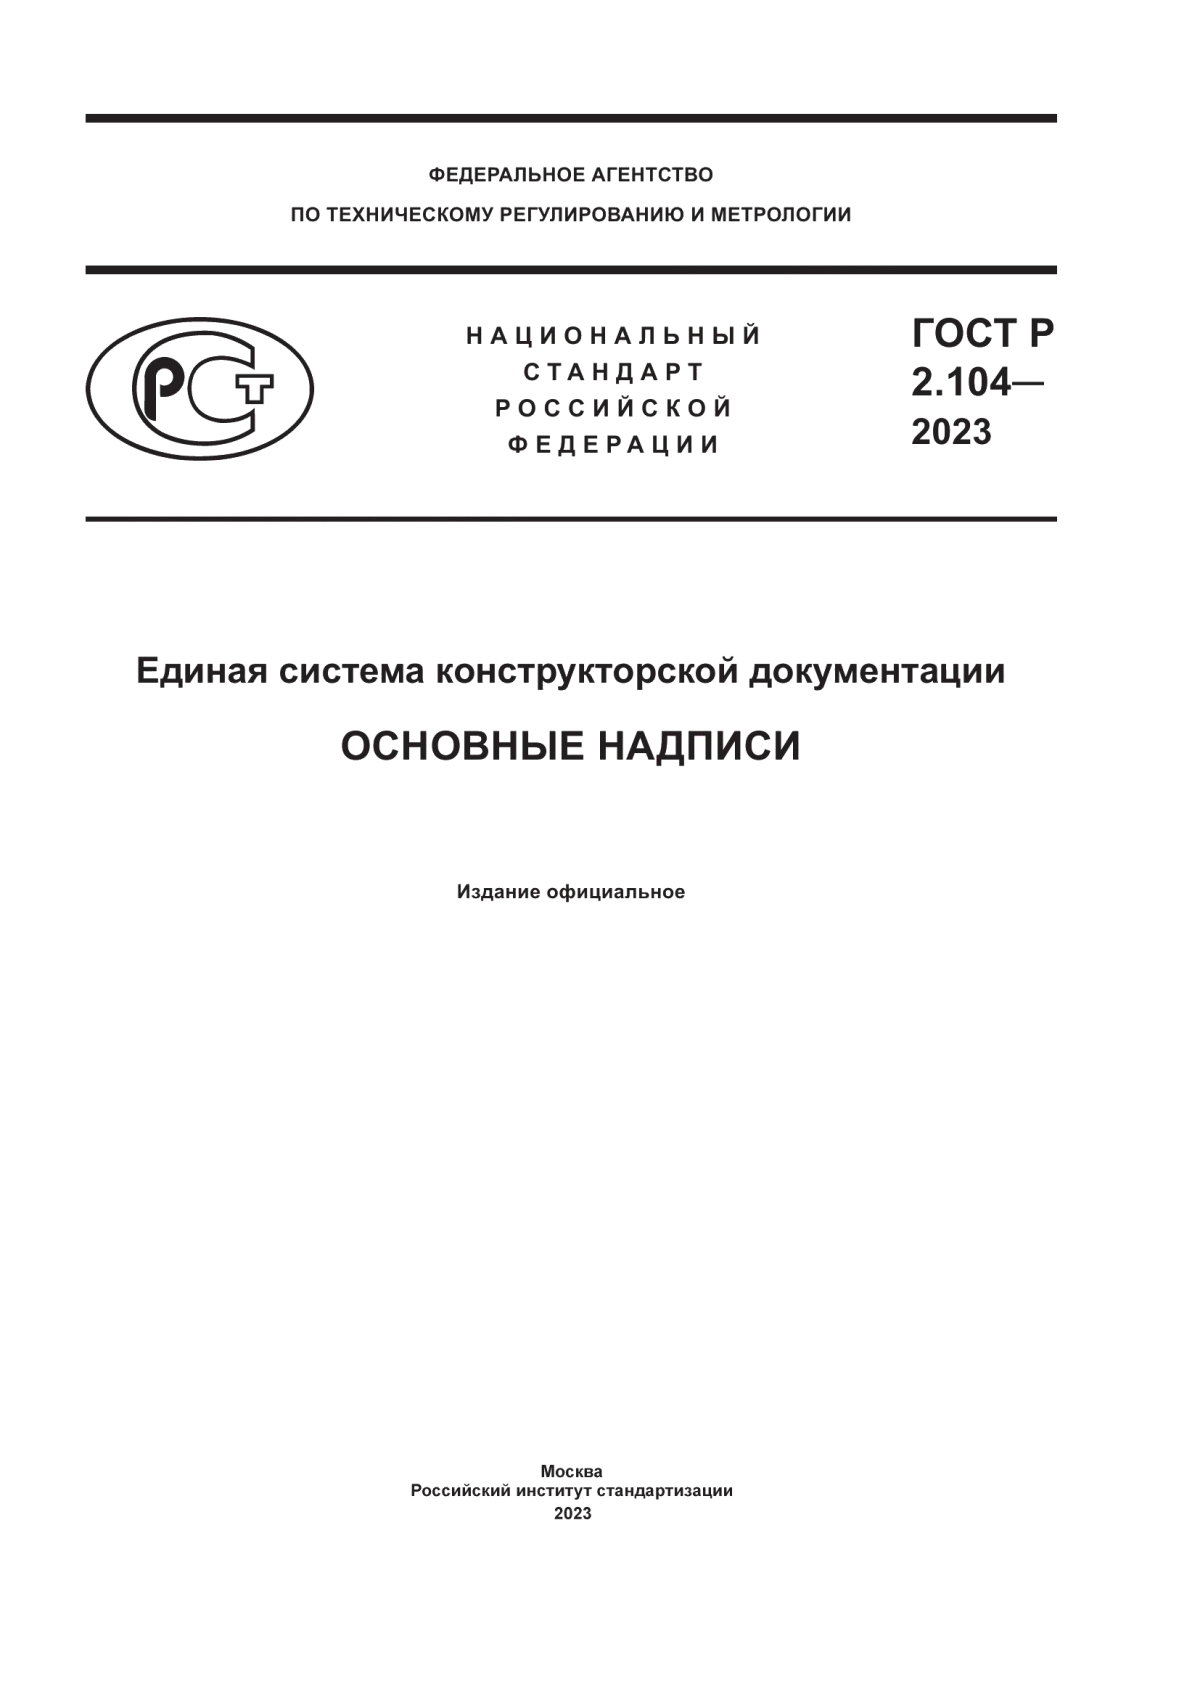 ГОСТ Р 2.104-2023 Единая система конструкторской документации. Основные надписи